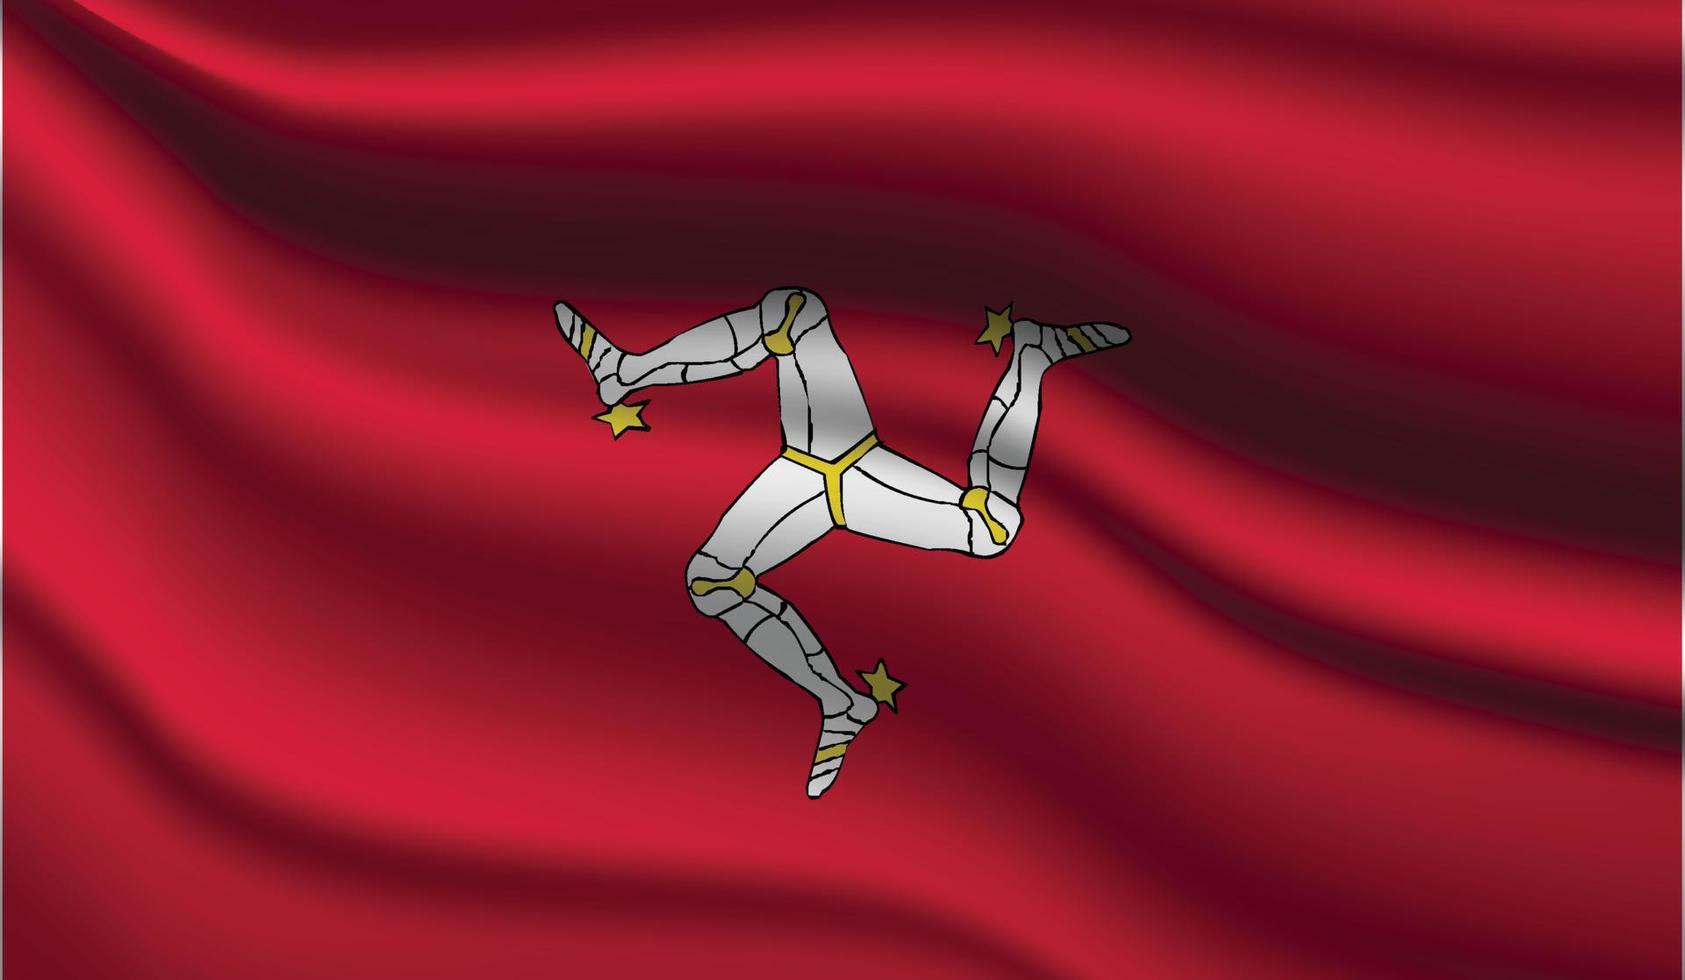 design moderno realista da bandeira da ilha de man vetor